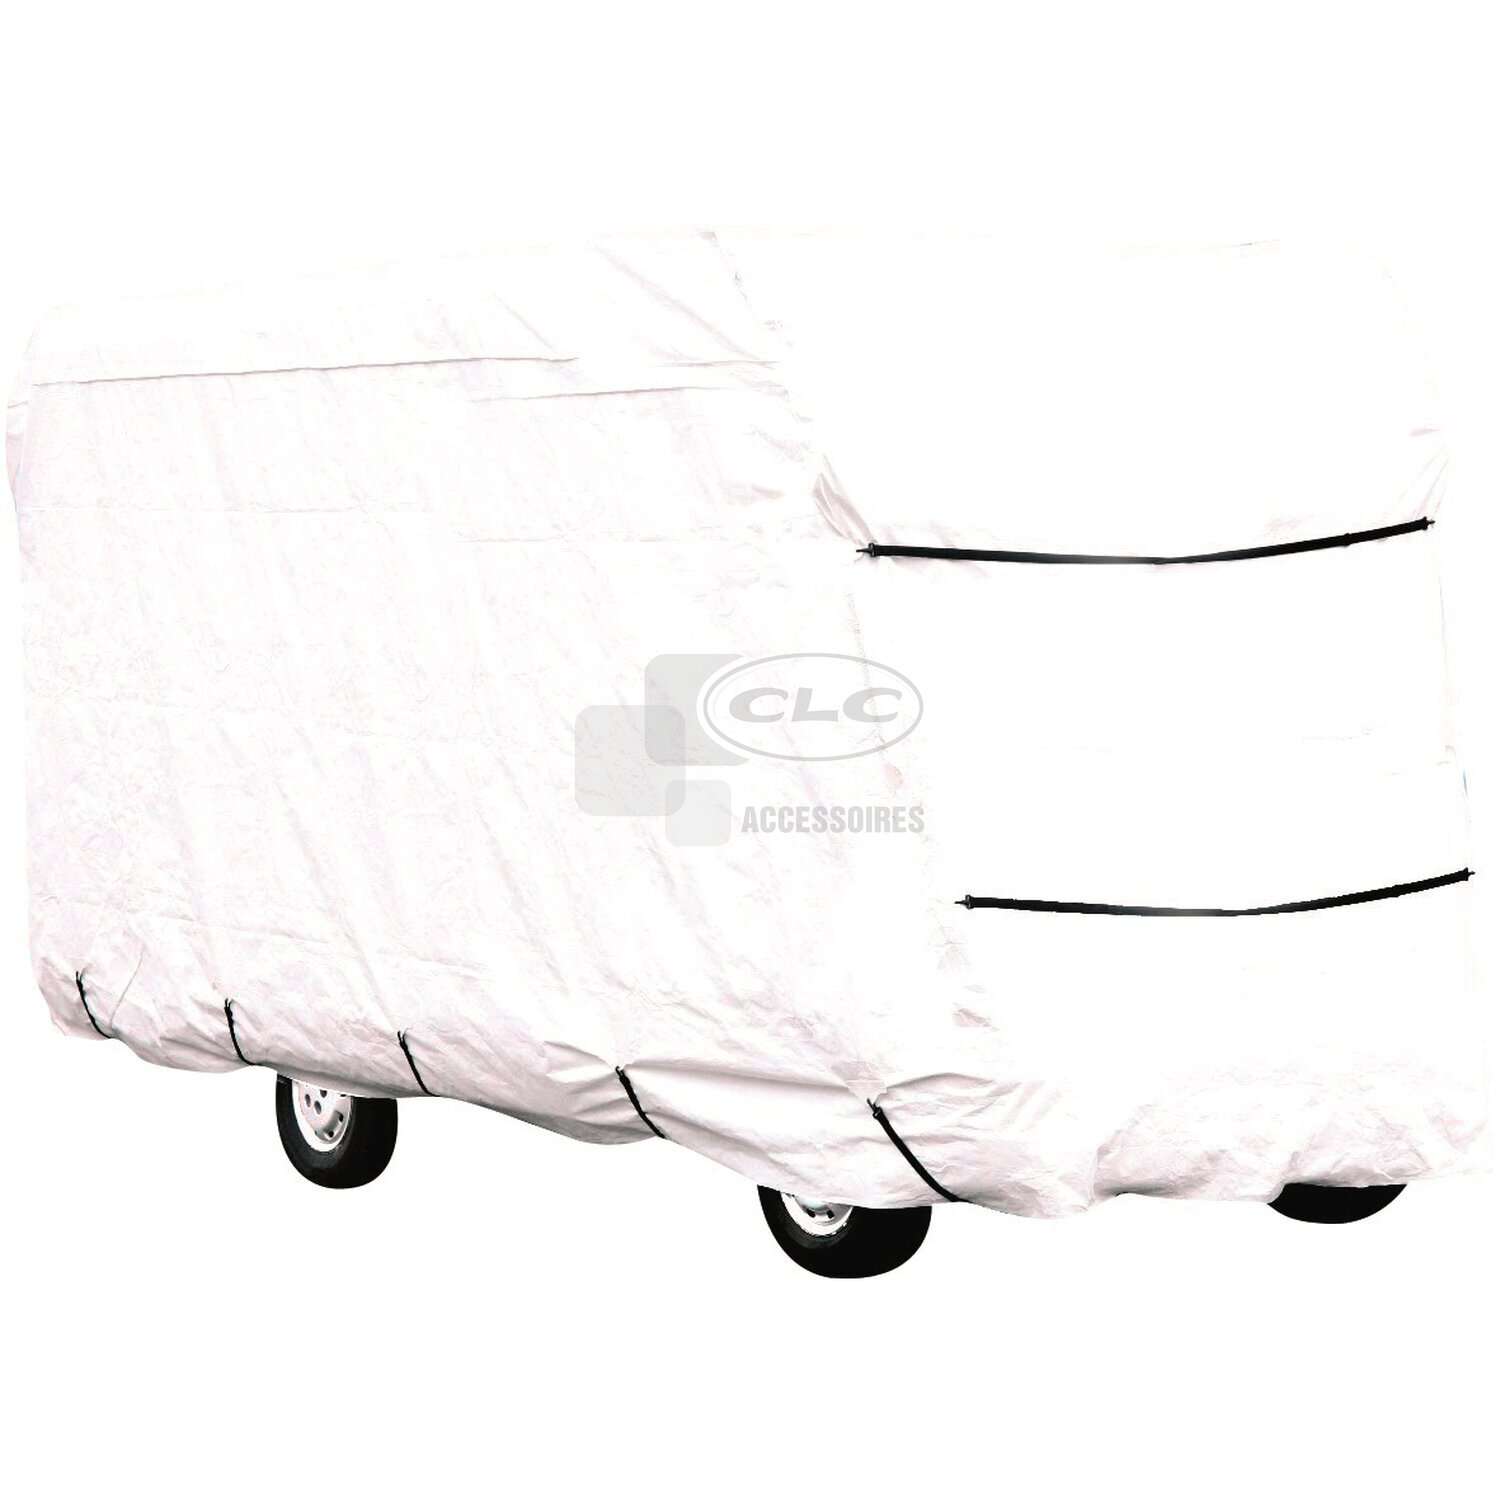 Bâche pour caravane ou camping-car - 550 x 225 x 220 cm - D24536 -  Accessoires